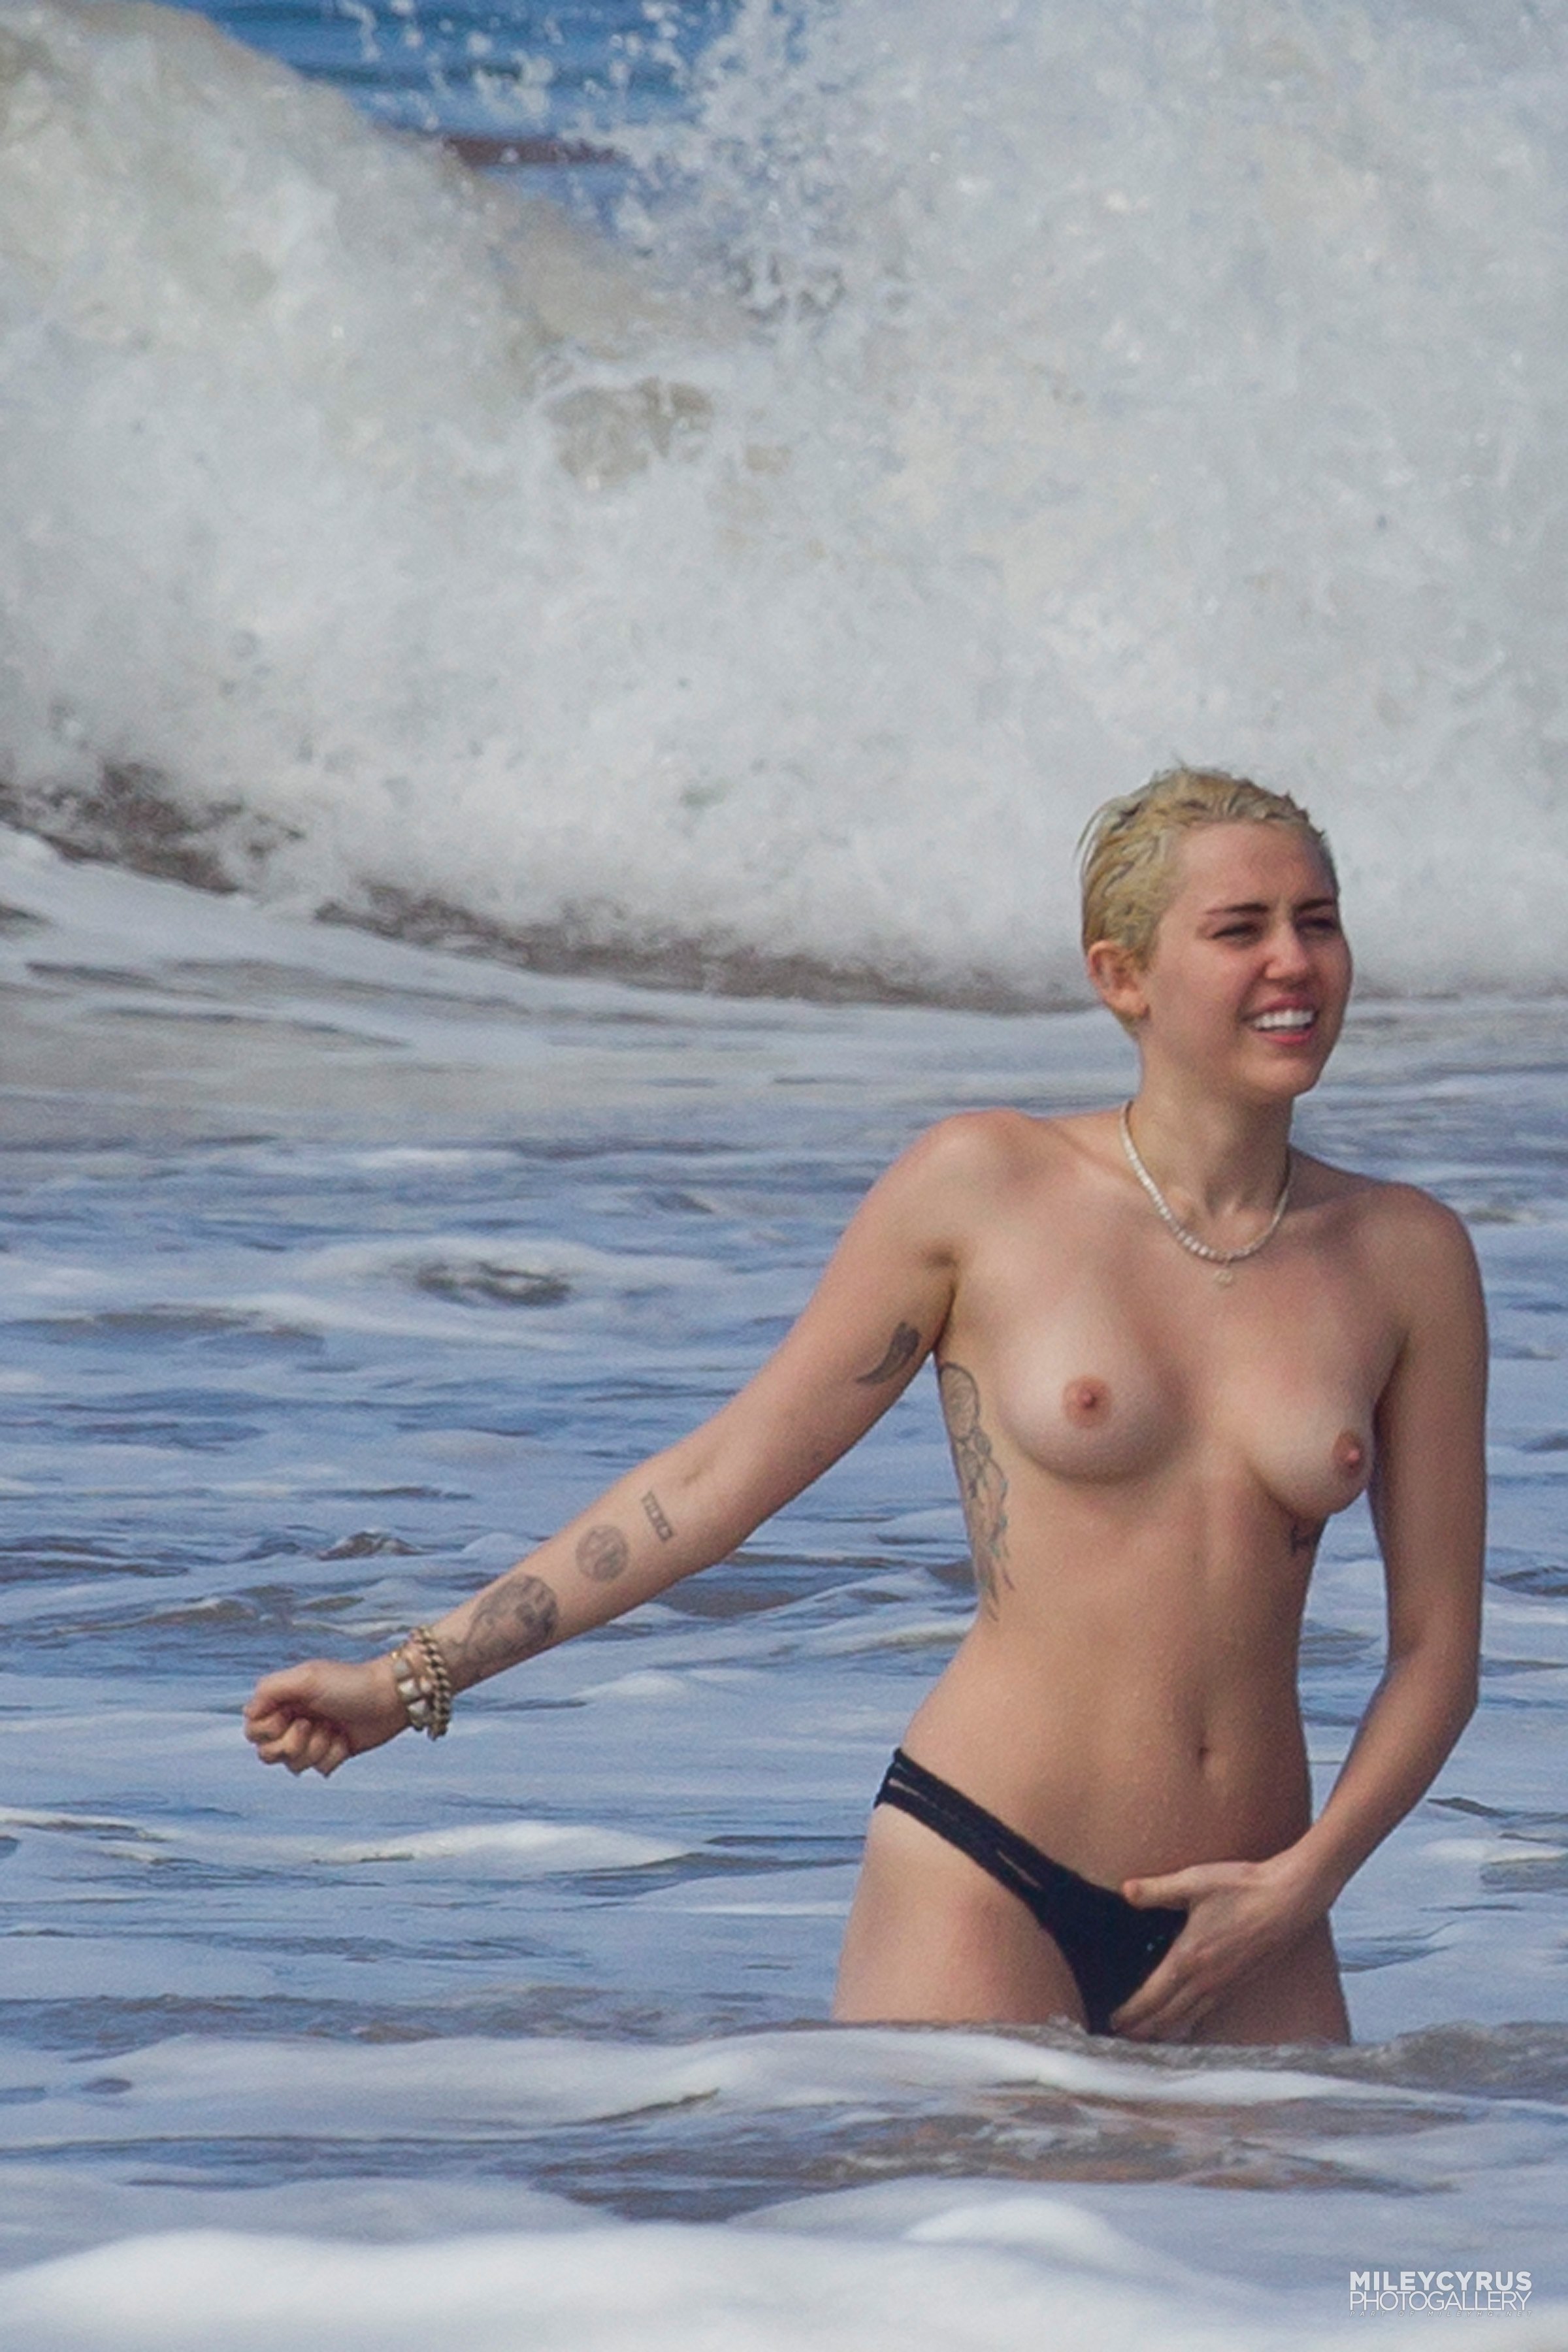 adam langer share miley cyrus topless beach photos